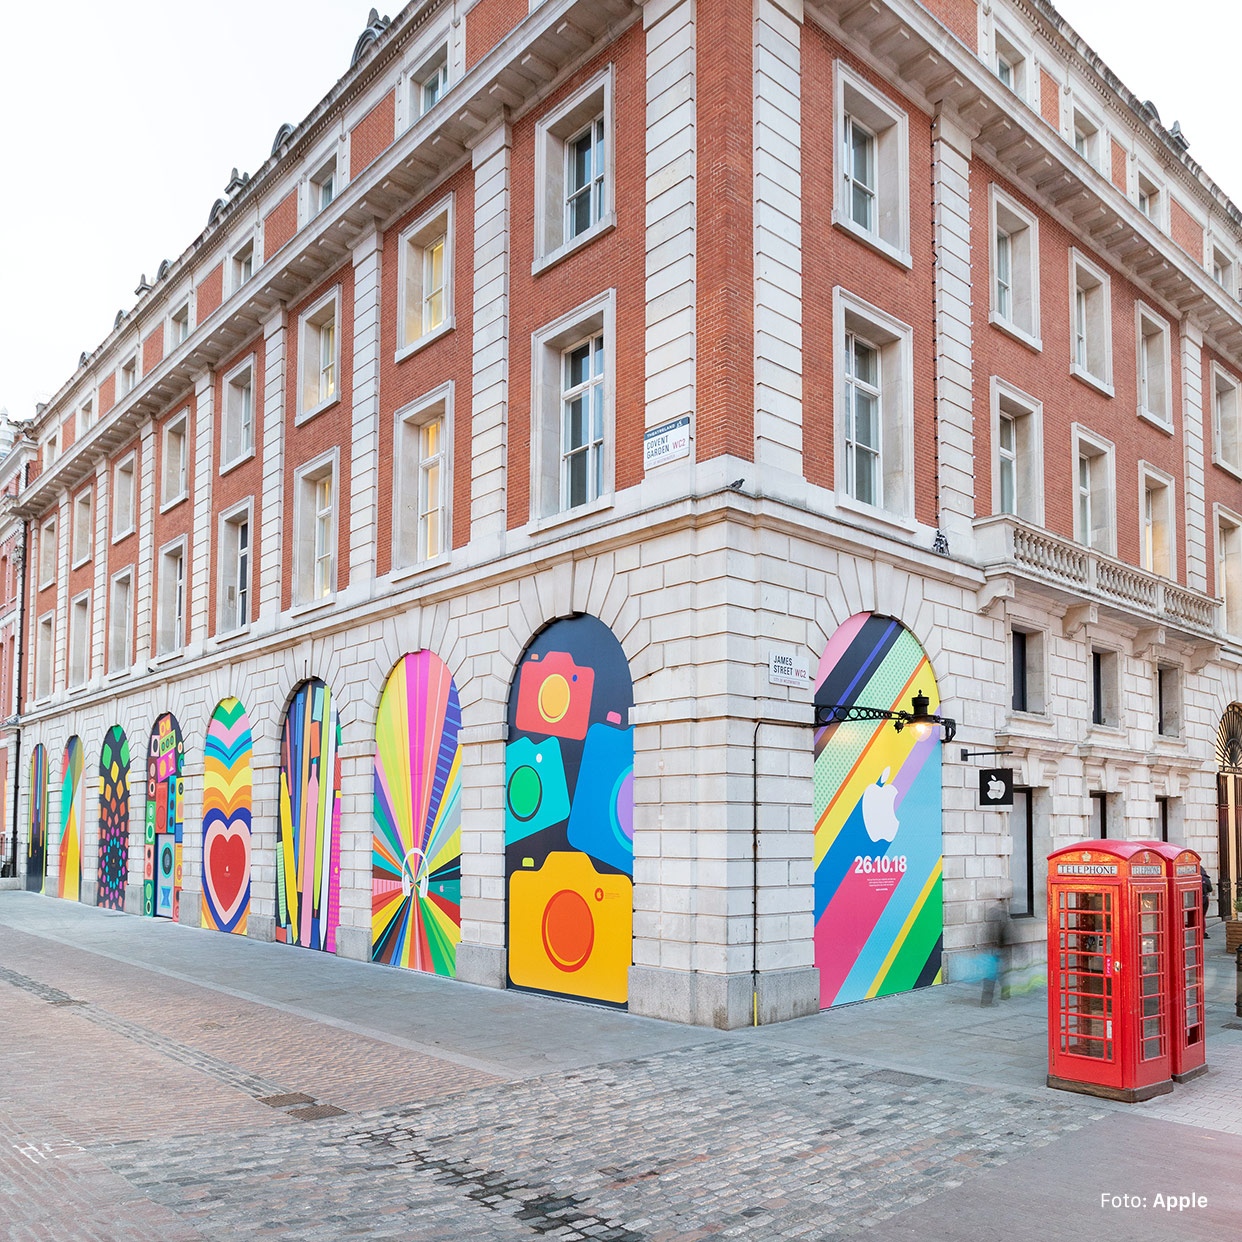 Apple Covent Garden: Wiedereröffnung am 26. Oktober, pünktlich für das iPhone X🅁 |u